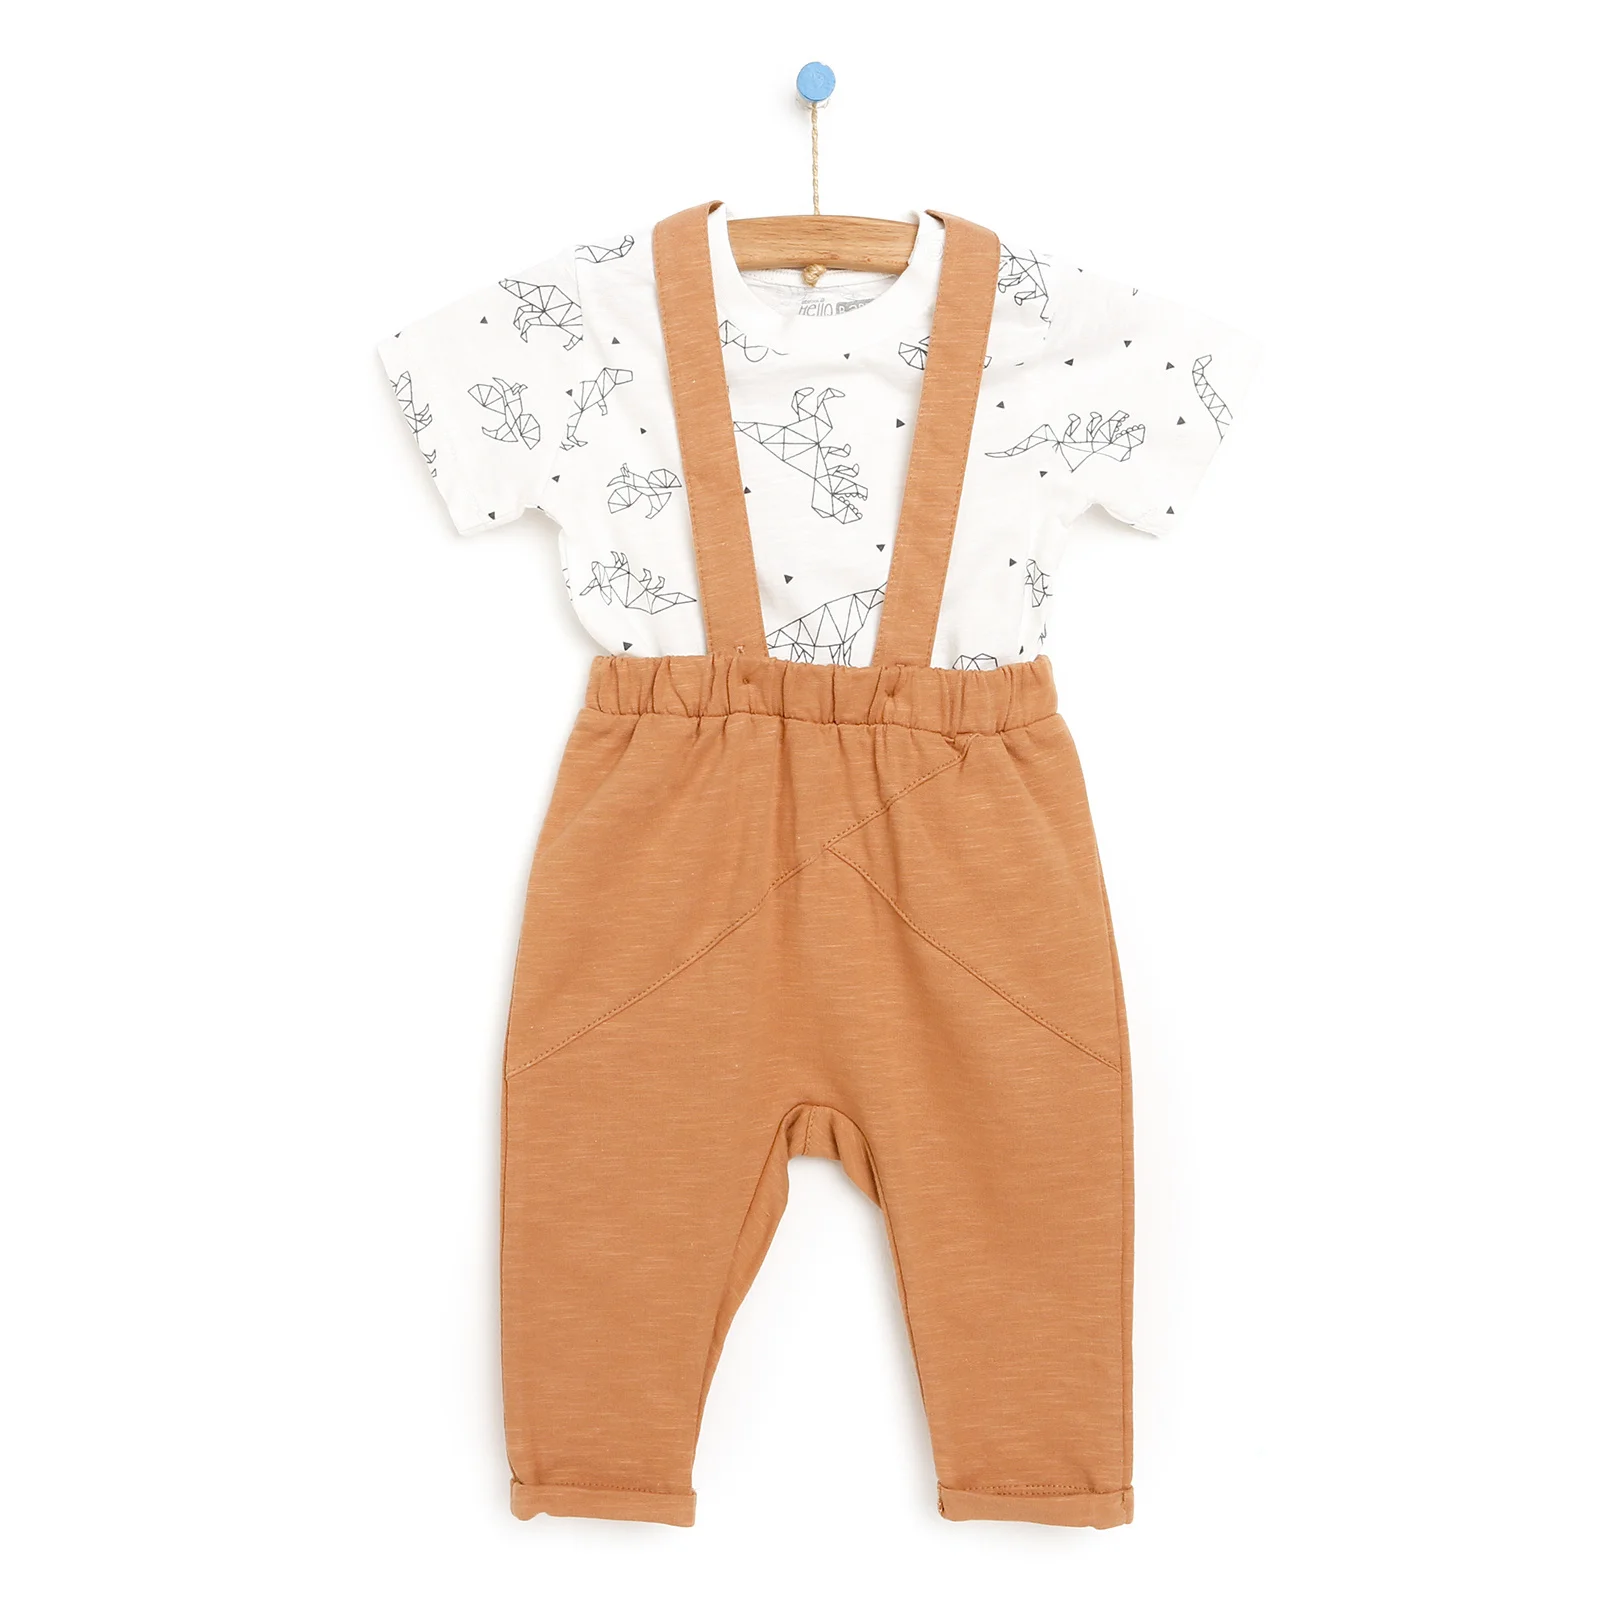 

ebebek HelloBaby 2022 New Season Baby Clothes Basic Nordic Erkek Bebek 2 İplik Salopet-Tshirt Takım